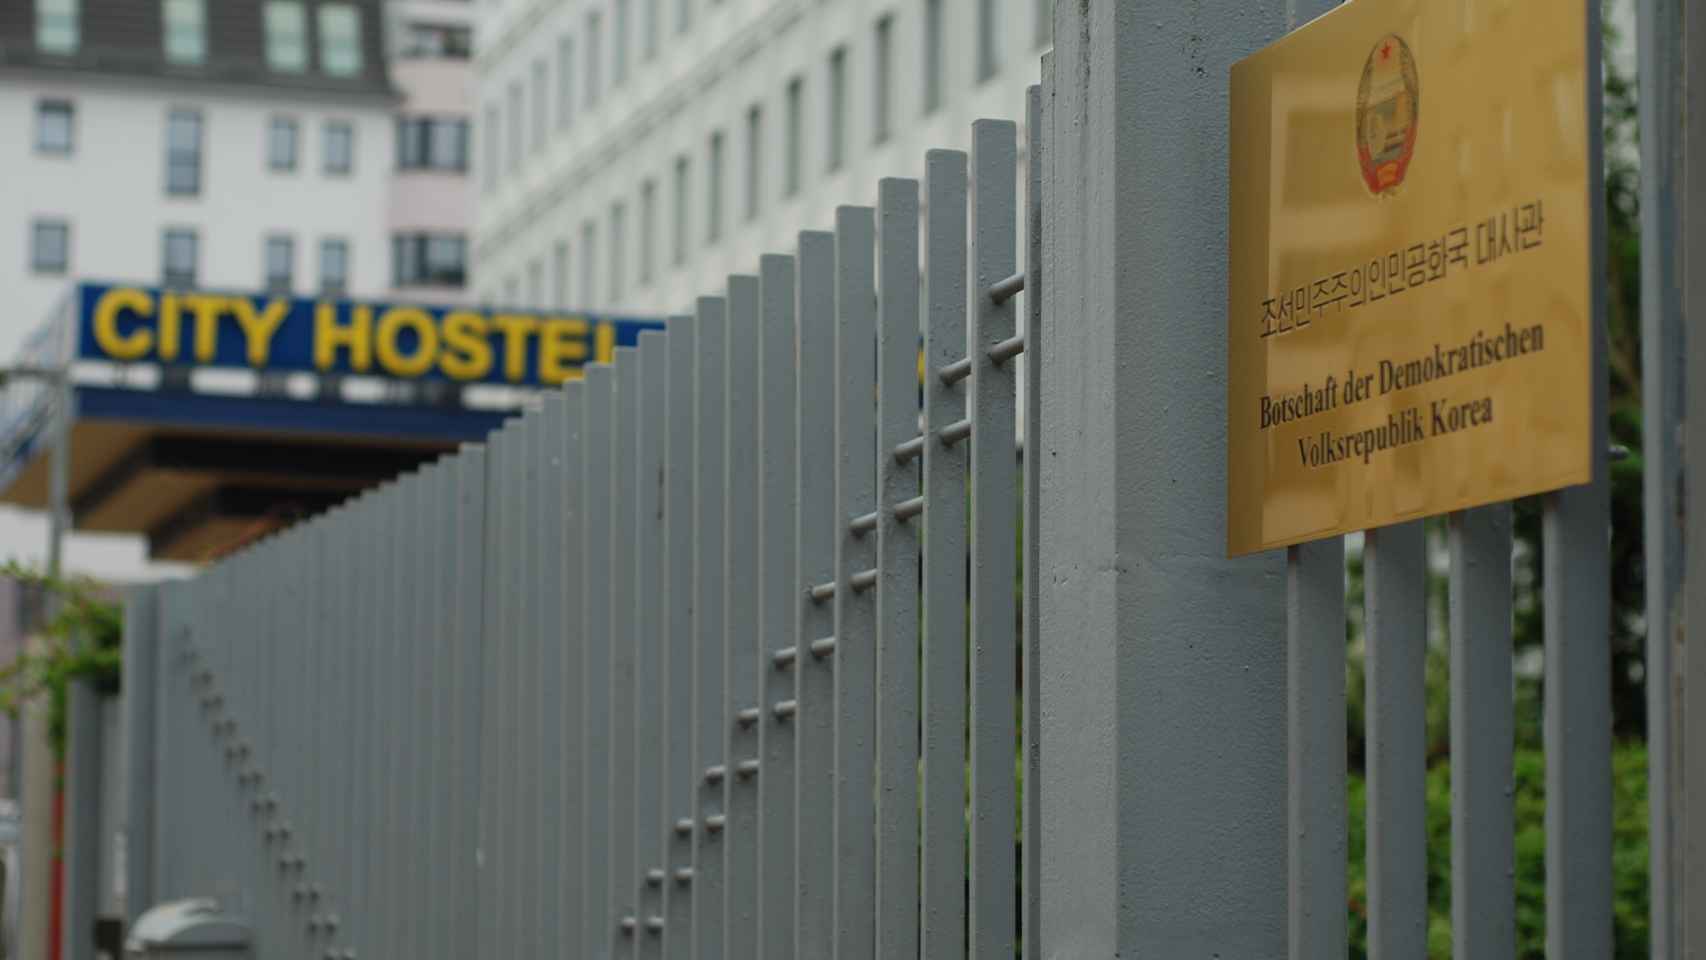 Entrada de la embajada norcoreana, el Cityhostel Berlin, al fondo